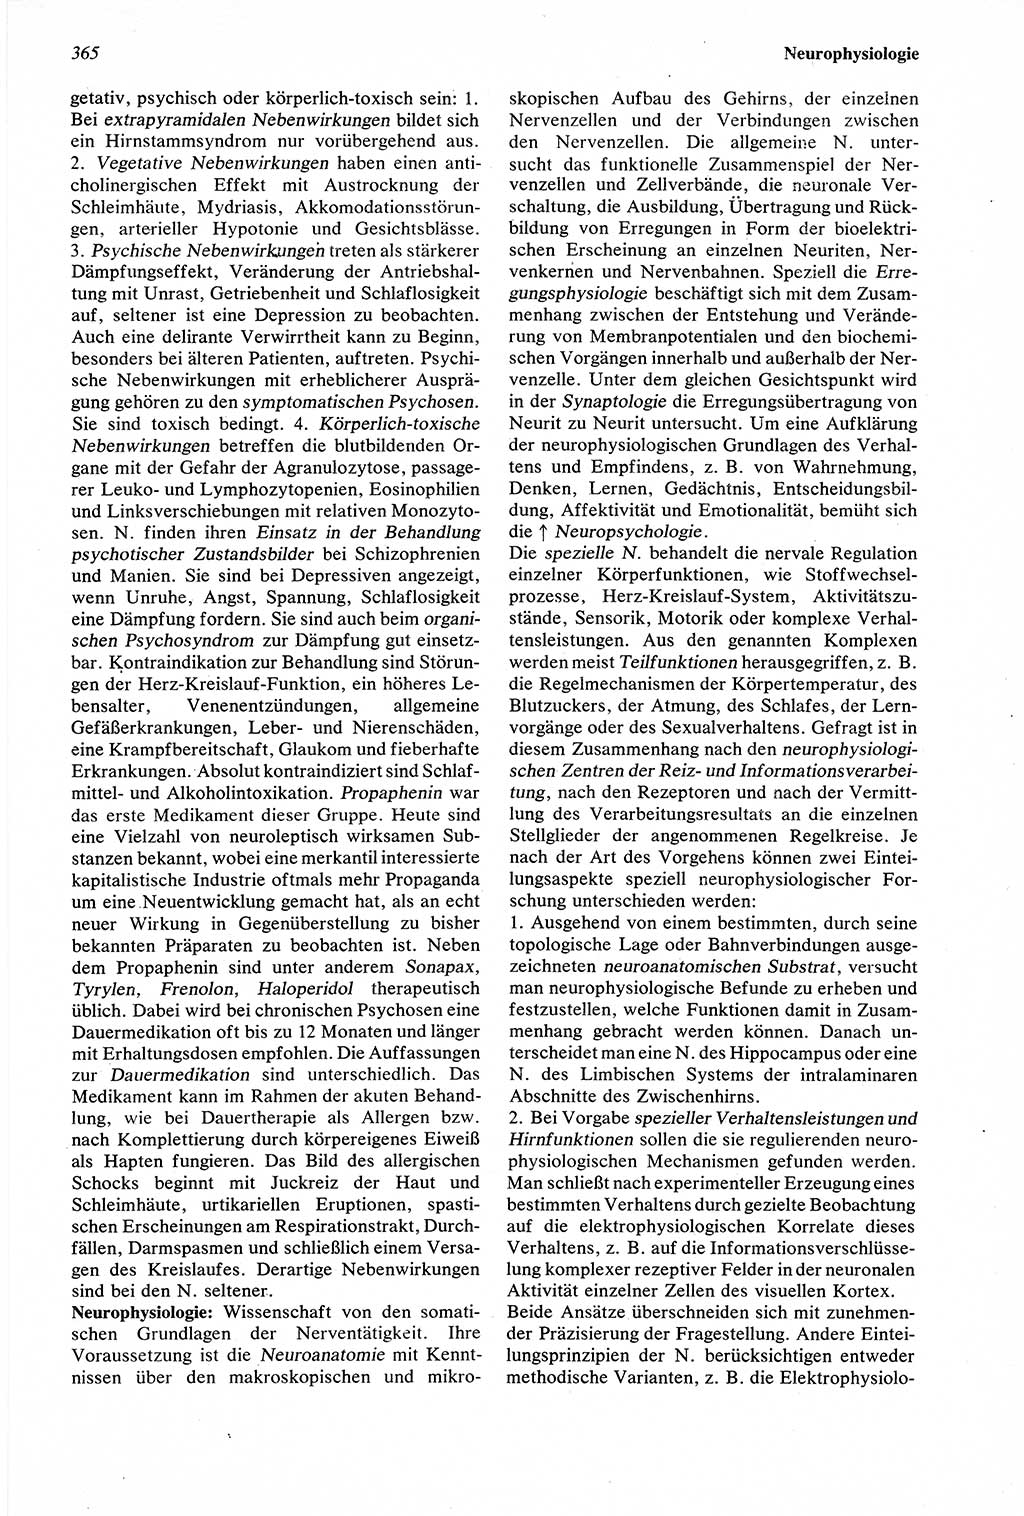 Wörterbuch der Psychologie [Deutsche Demokratische Republik (DDR)] 1976, Seite 365 (Wb. Psych. DDR 1976, S. 365)